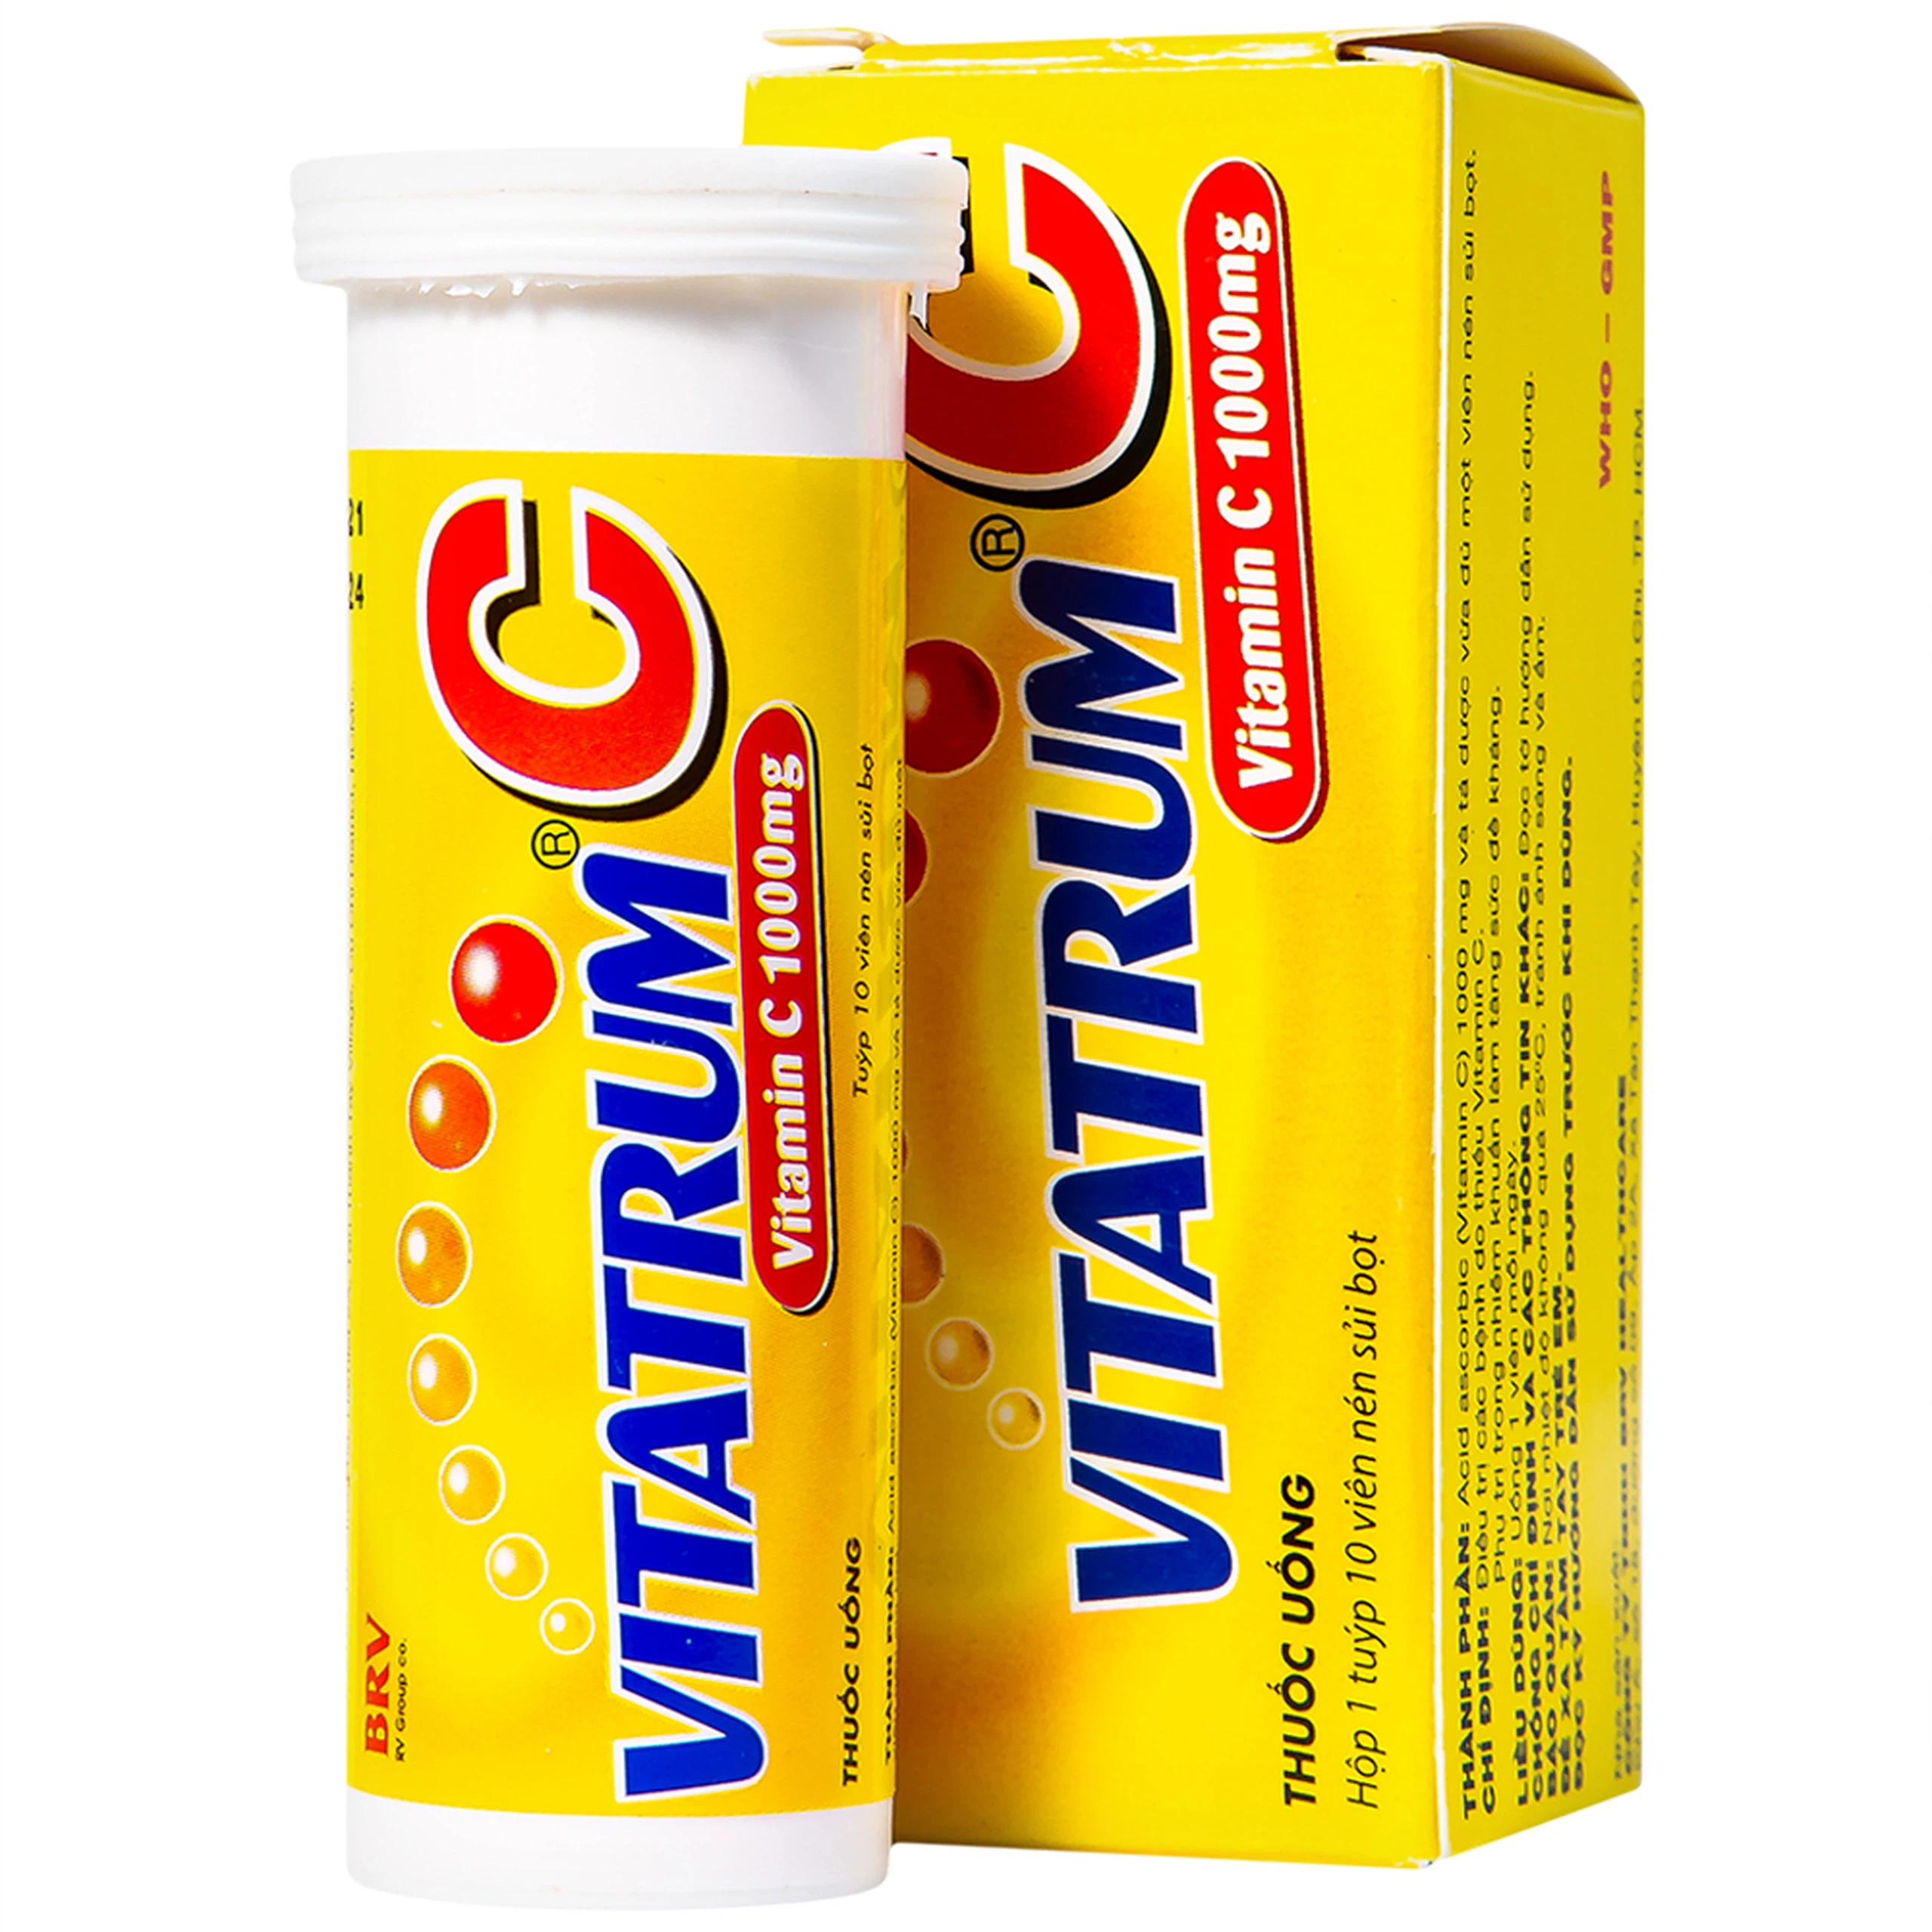 Viên sủi Vitatrum C BRV điều trị các bệnh do thiếu vitamin C (10 viên)